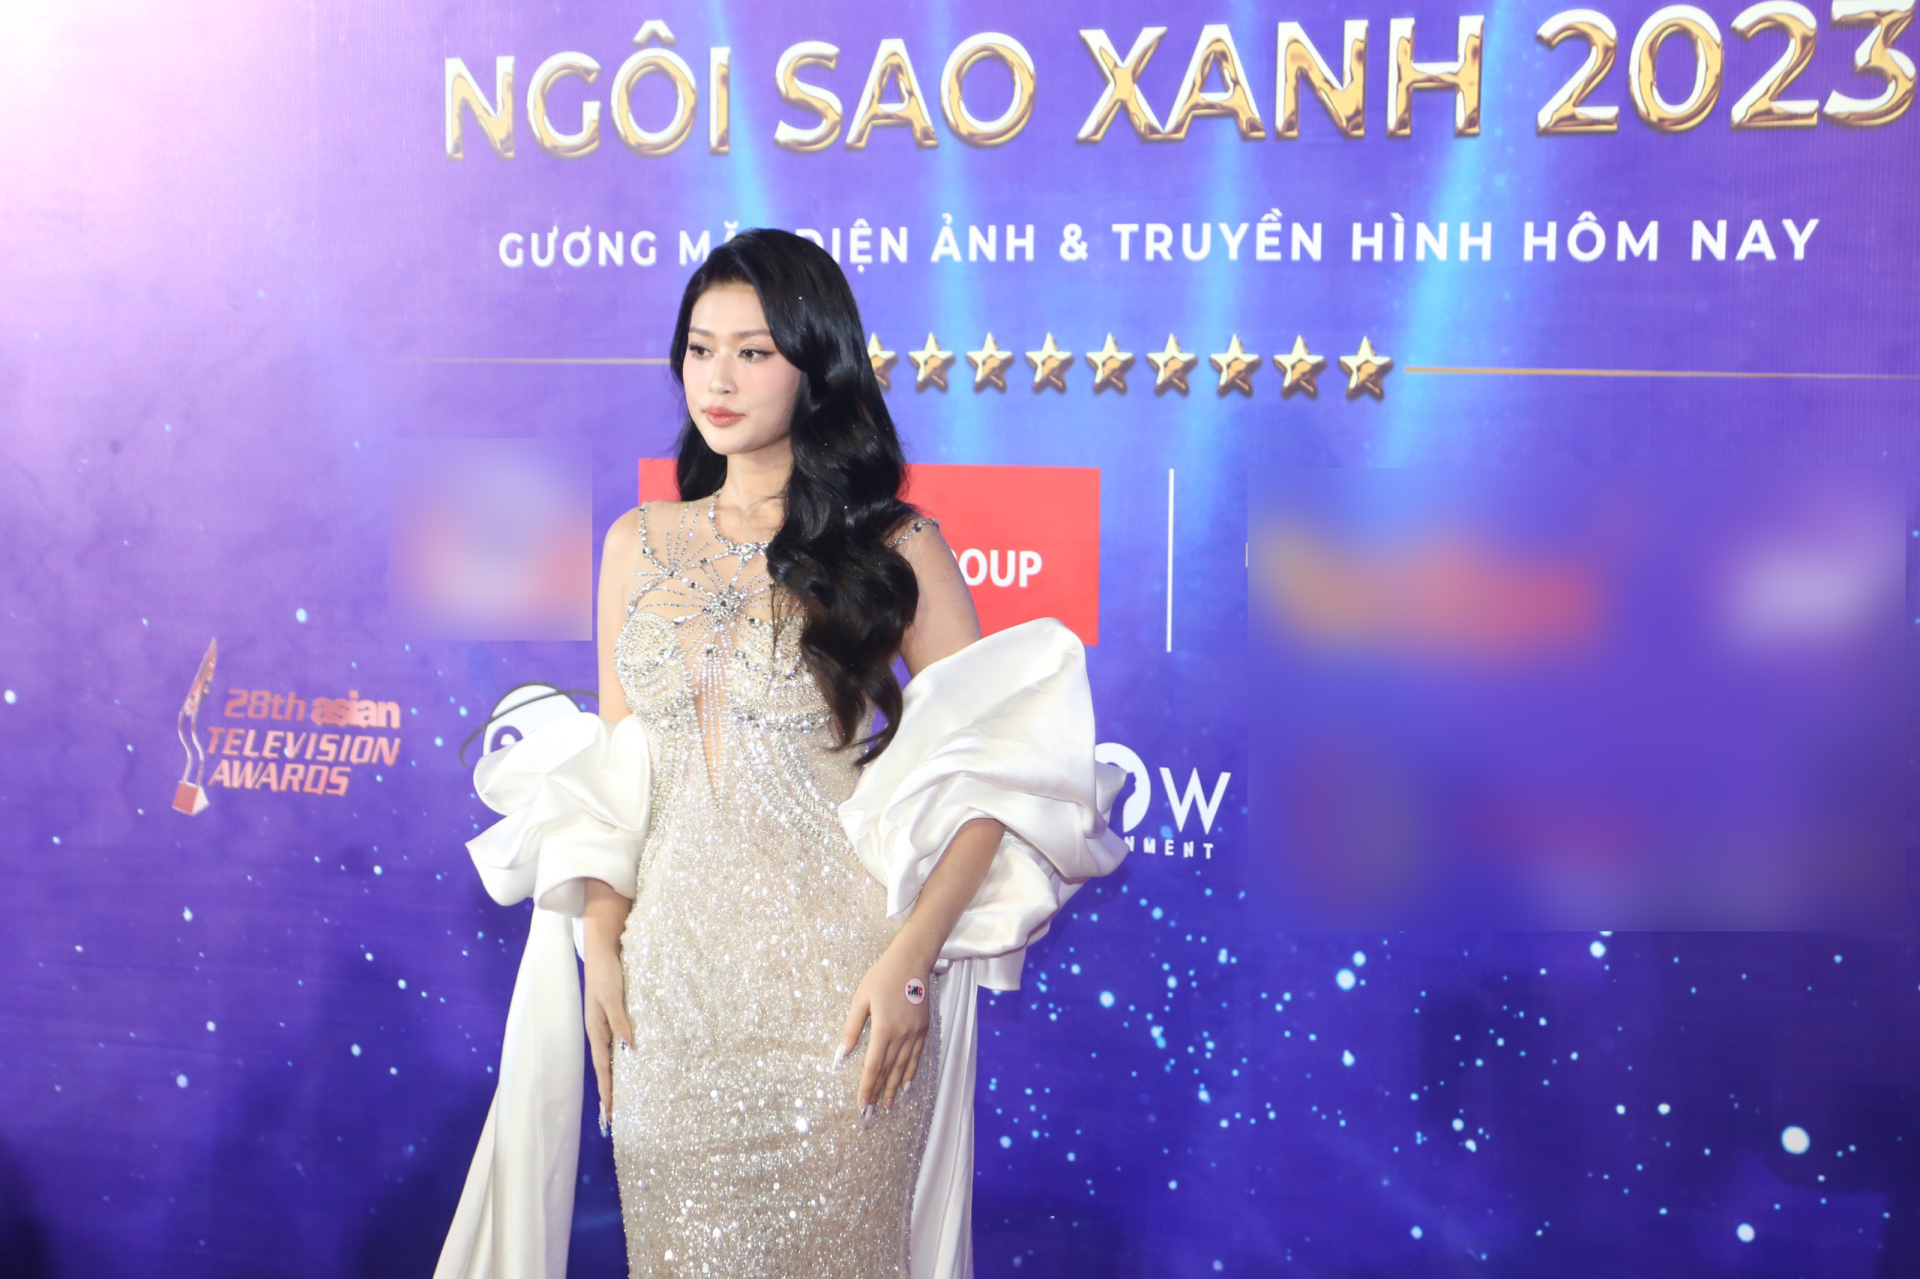 DJ Mie khoe nhan sắc như Hoa hậu, vợ một nam ca sĩ nổi tiếng lộ gương mặt khác lạ trên thảm đỏ - ảnh 5